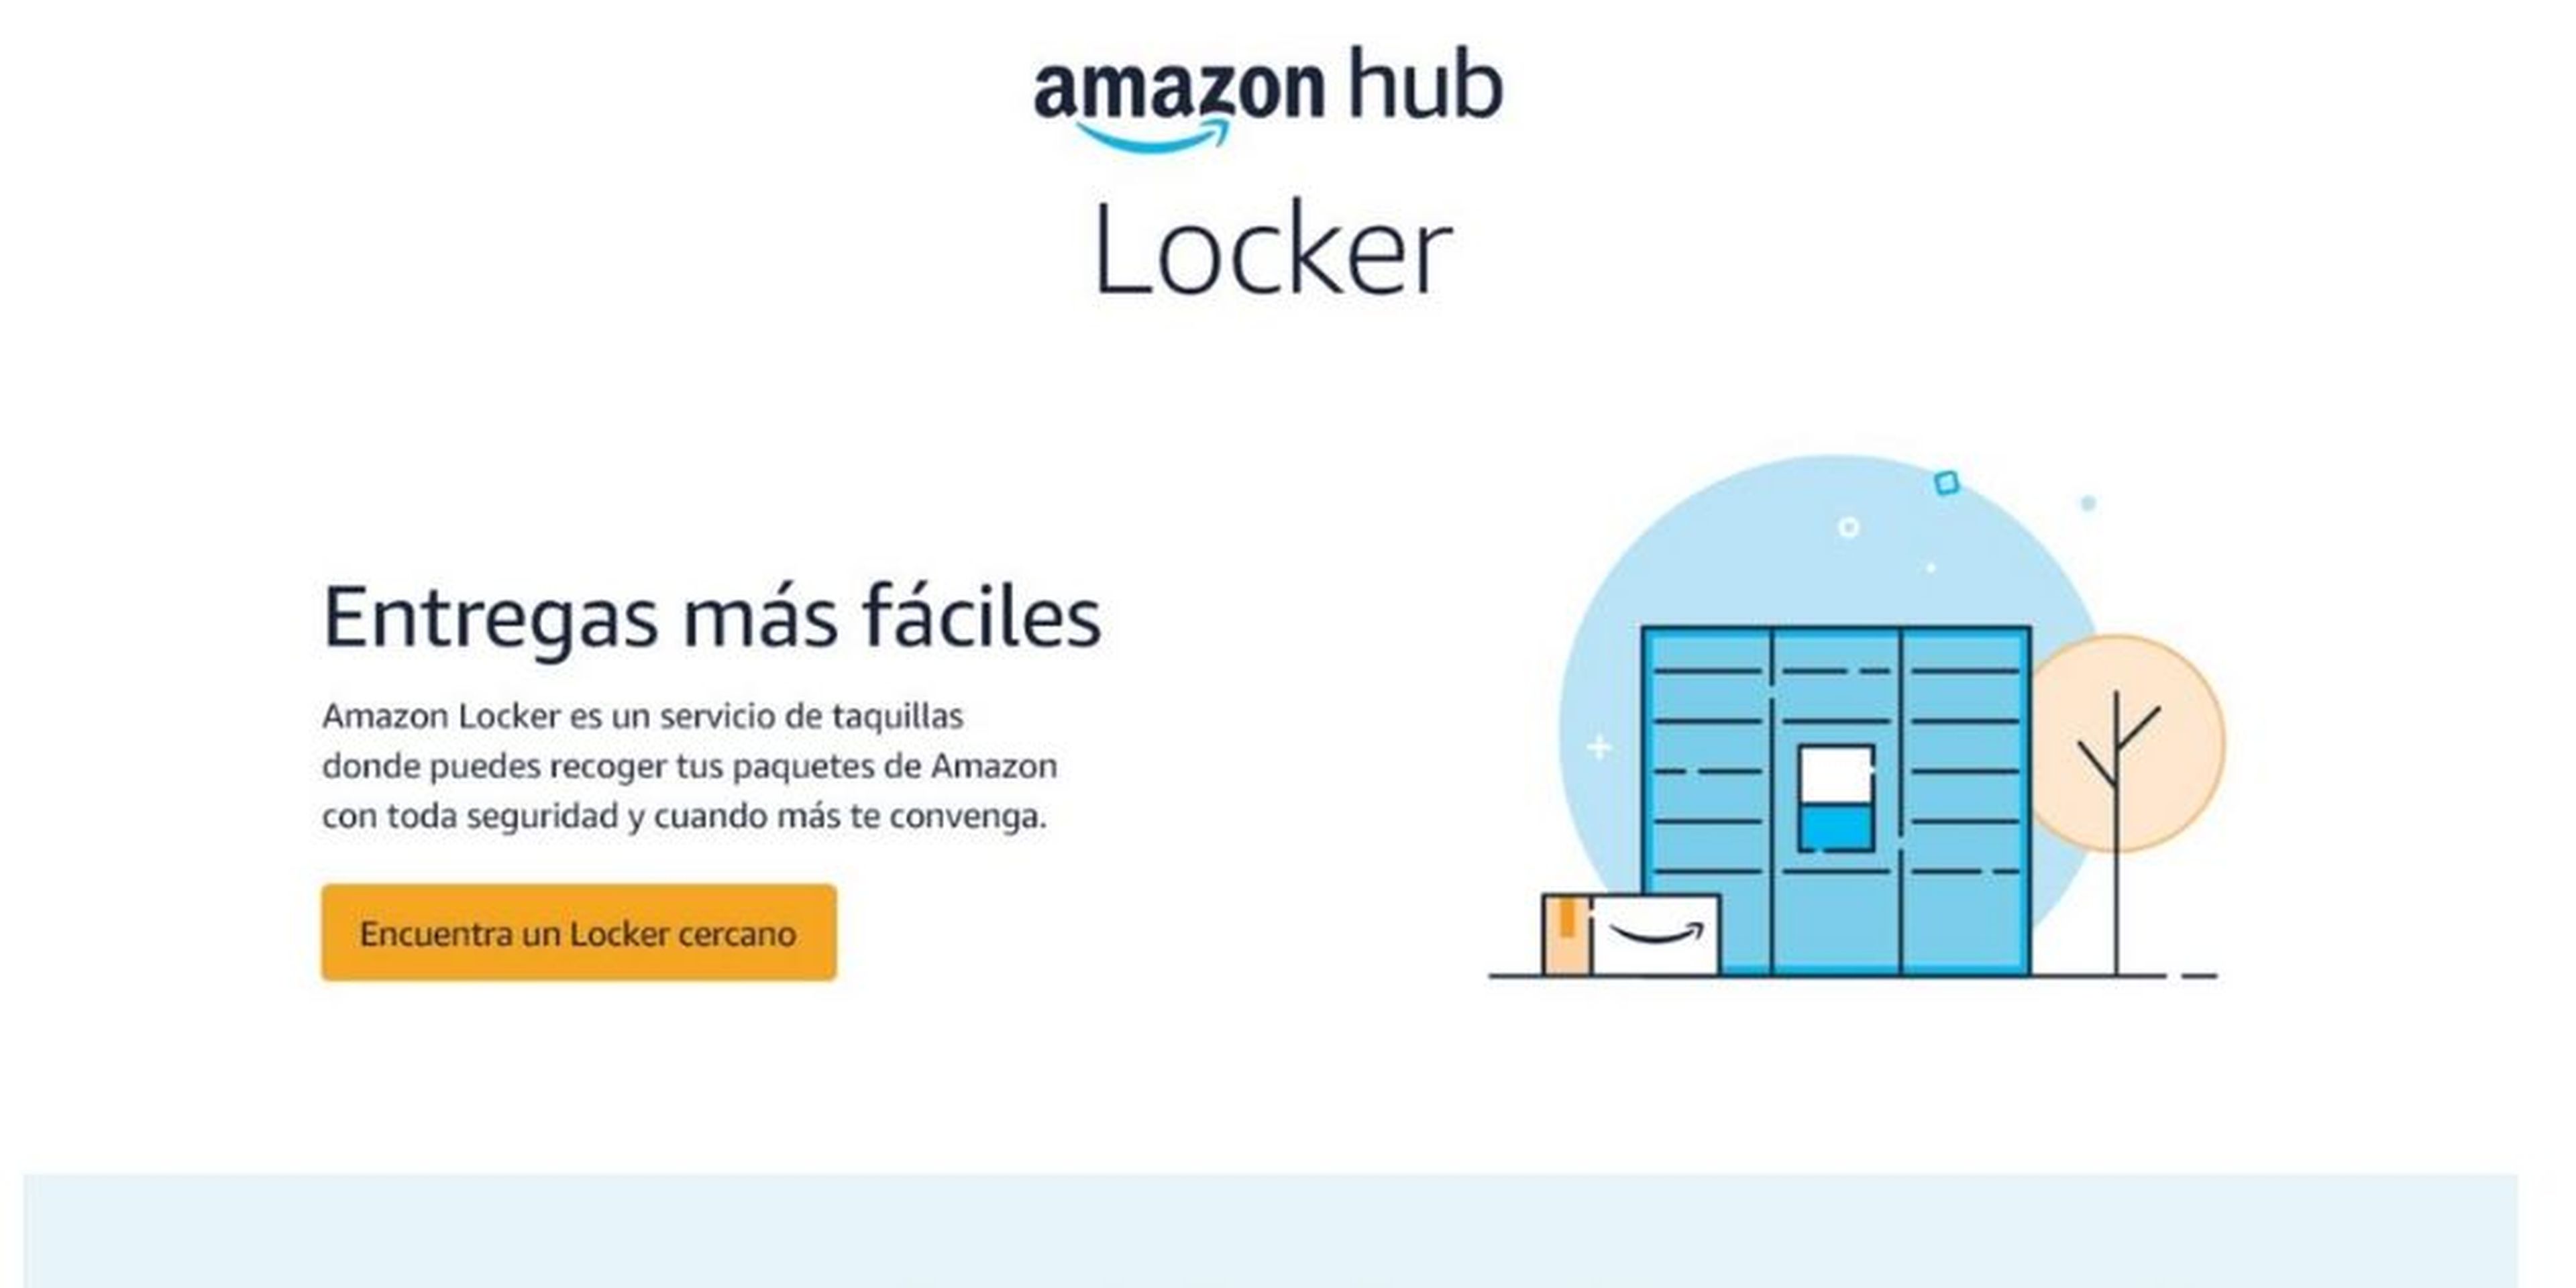 Amazon Locker: qué es y cómo funciona